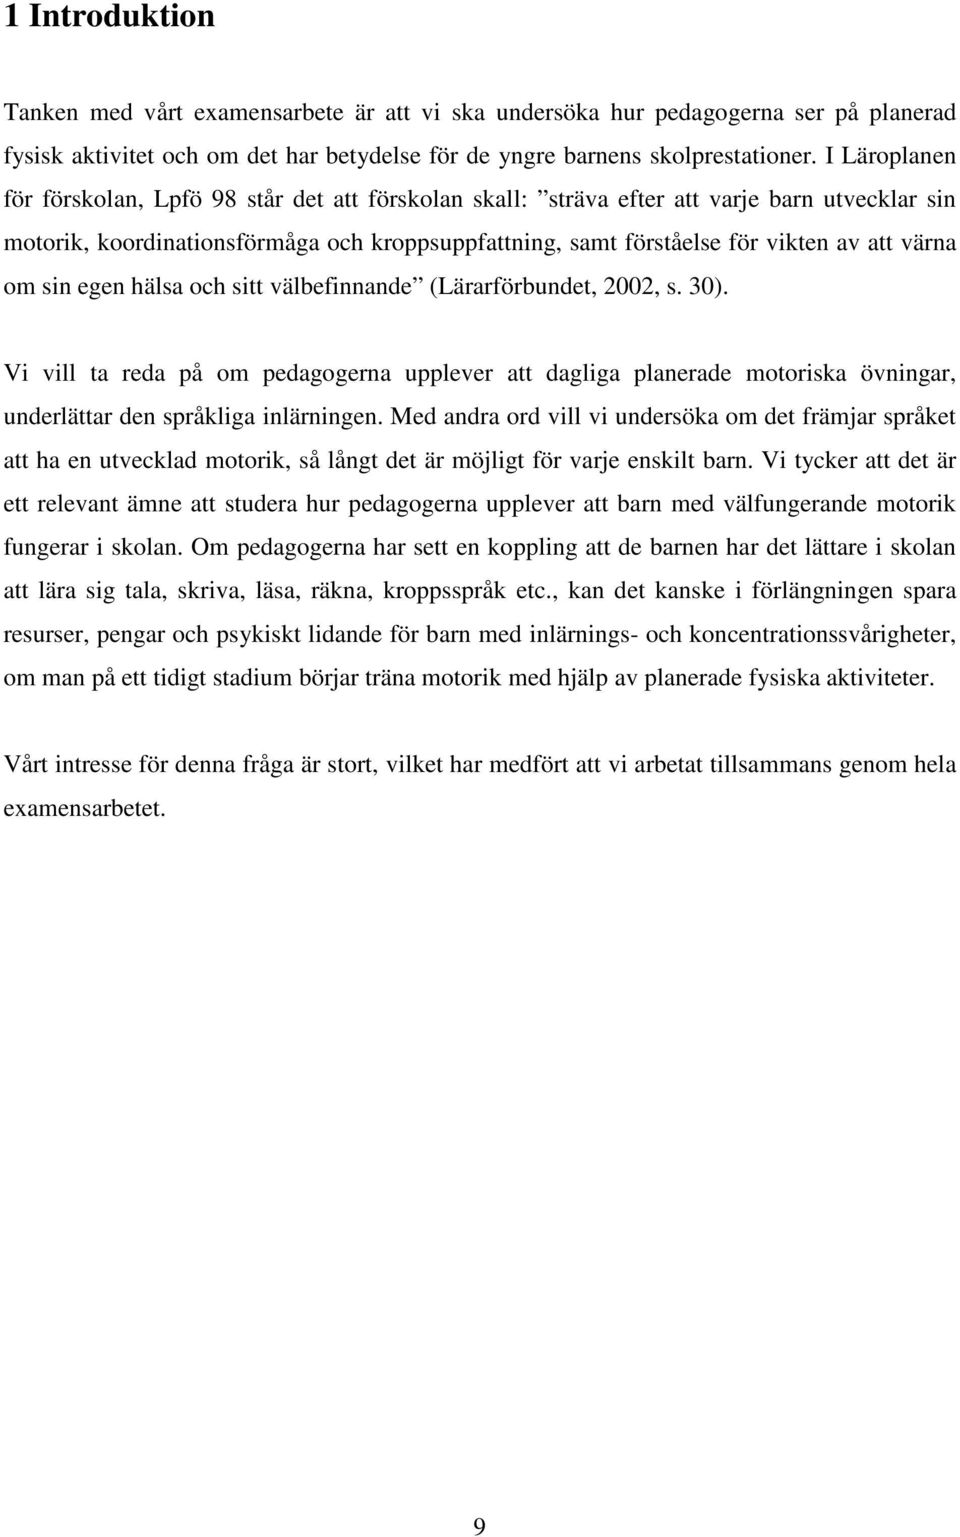 värna om sin egen hälsa och sitt välbefinnande (Lärarförbundet, 2002, s. 30).